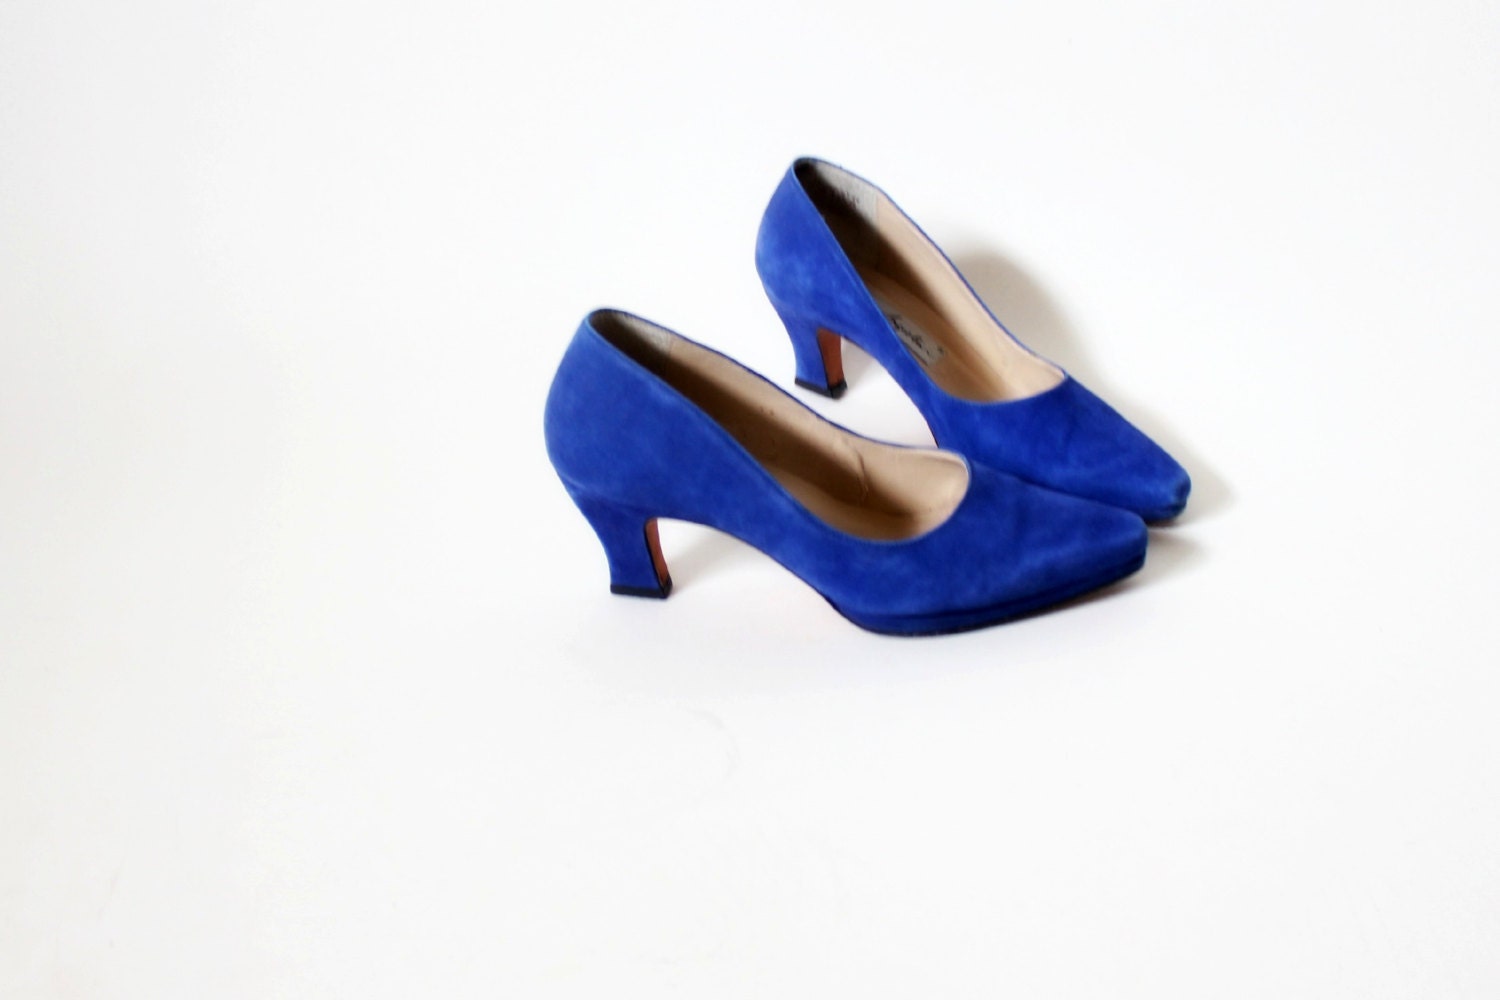 cobalt blue kitten heels